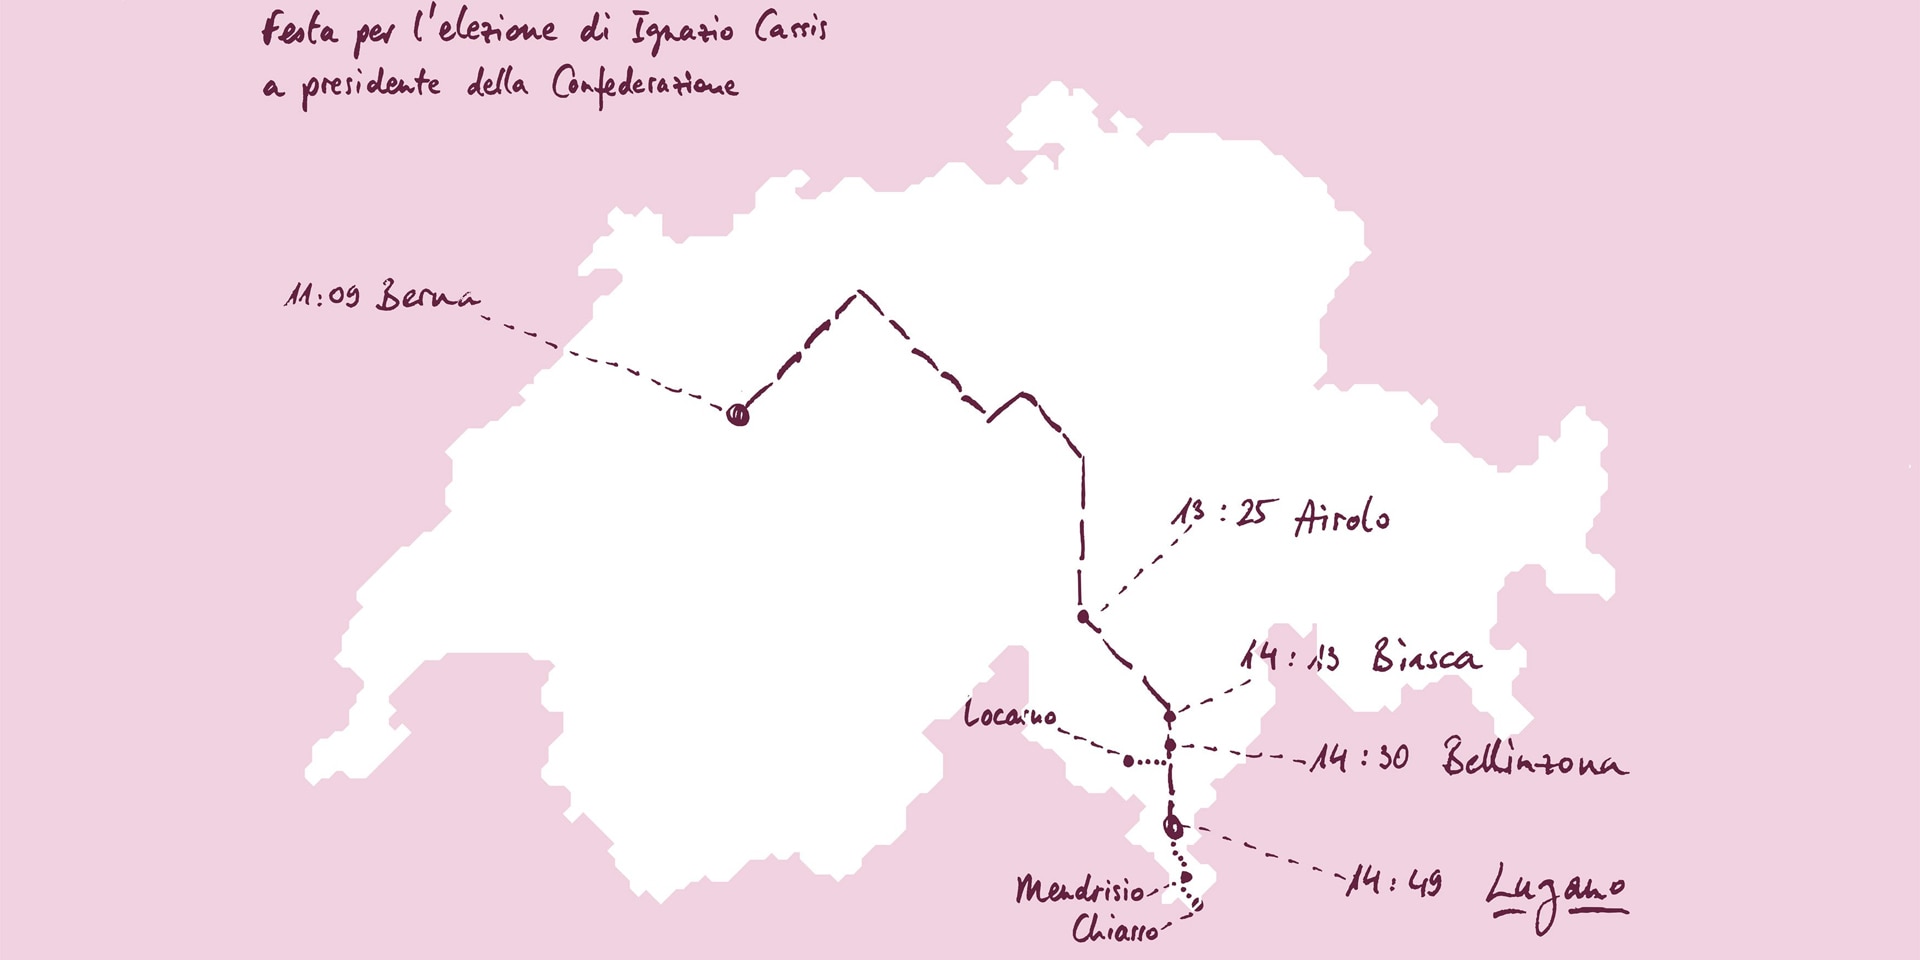 Su una cartina della Svizzera è segnato il percorso del viaggio del presidente Cassis come anche i comuni che parteciperanno ai festeggiamenti. 